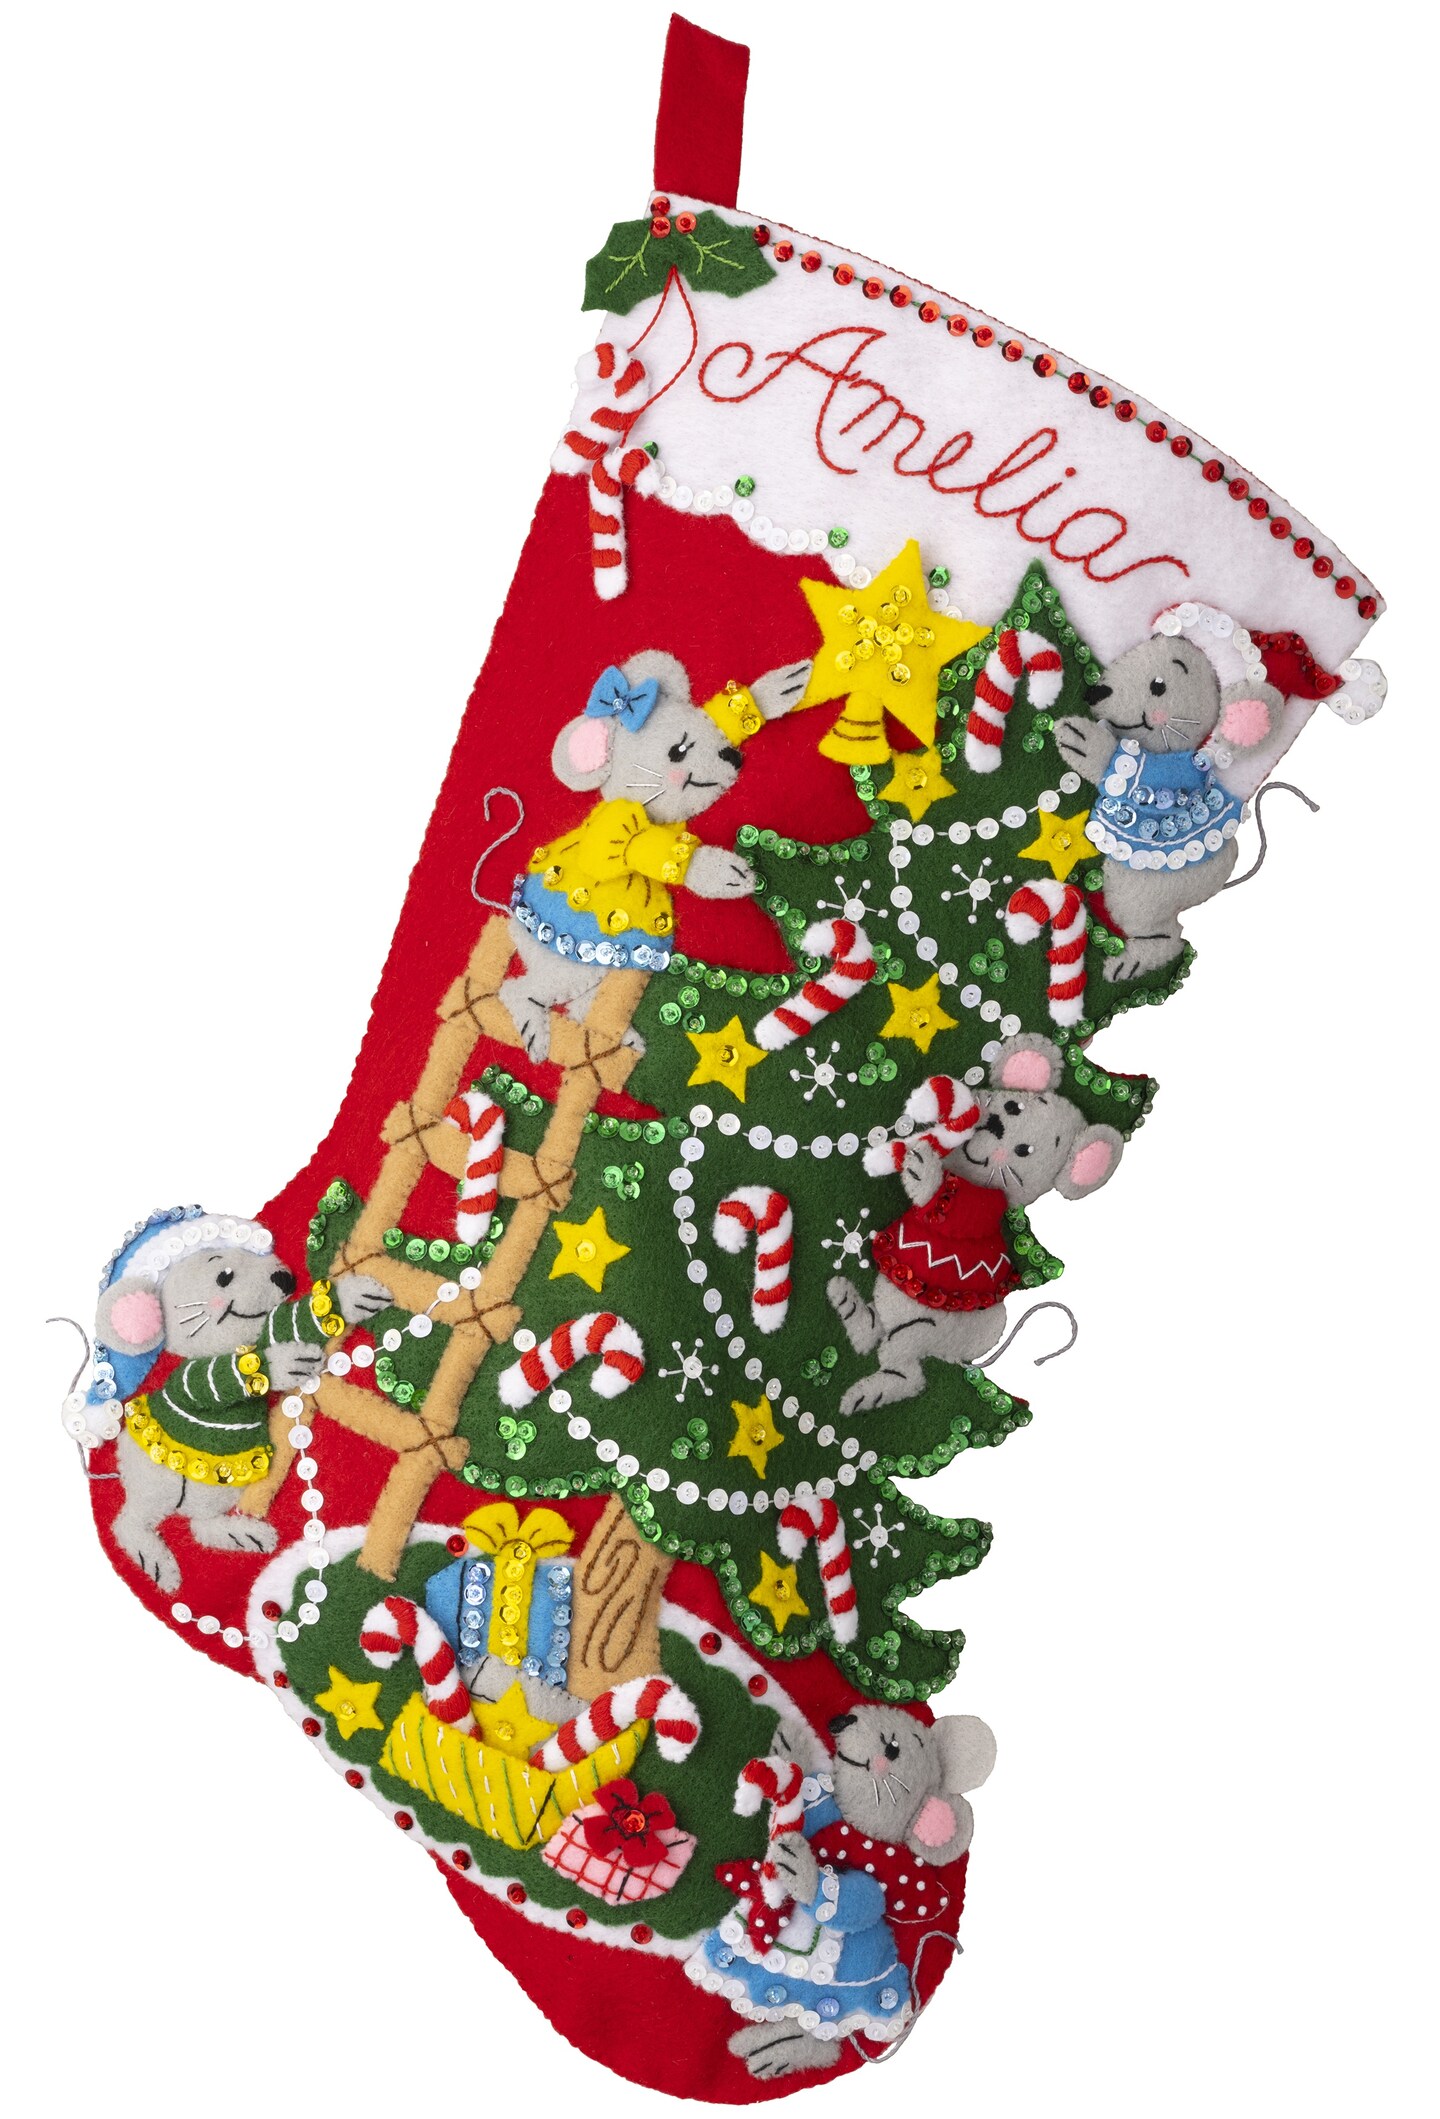  Bucilla Christmas Stocking Kits - Tobin